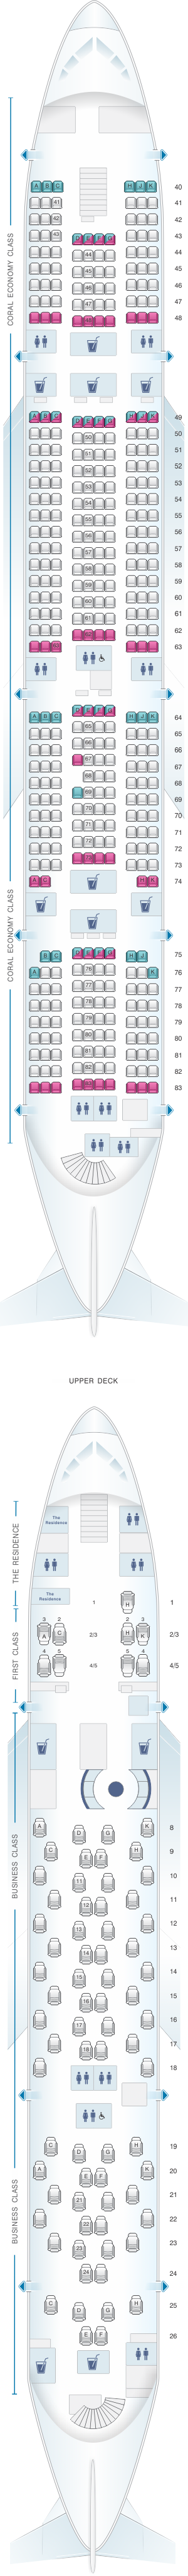 Etihad Airline Seating Chart